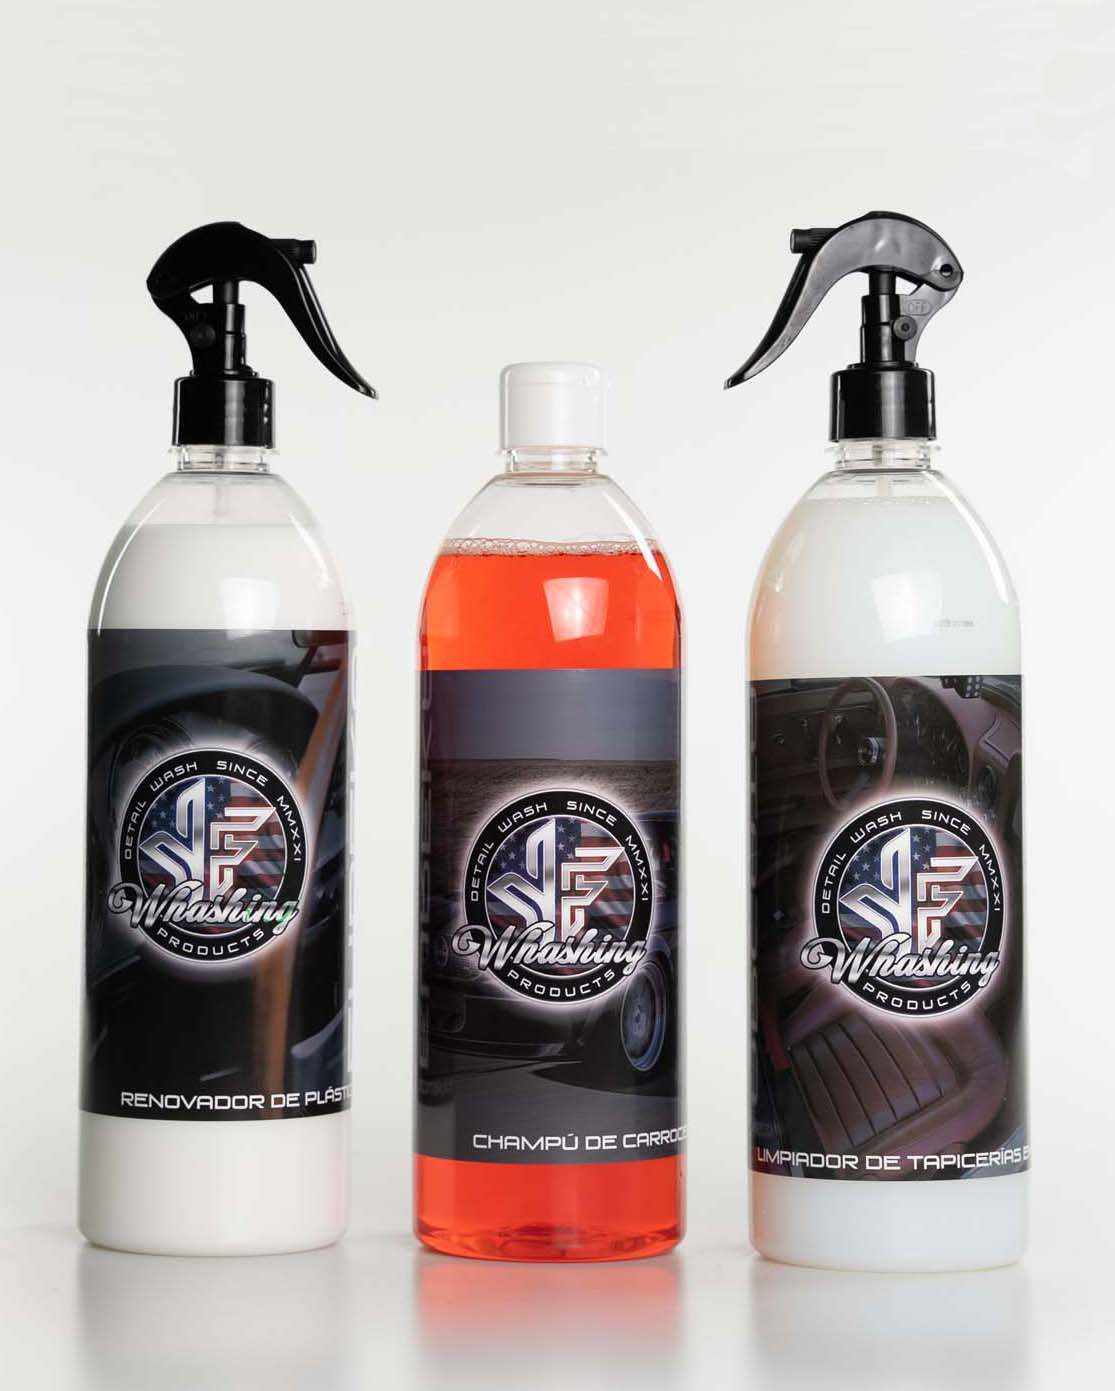 productos-para-limpieza-de-coches-yf-washing-products-5